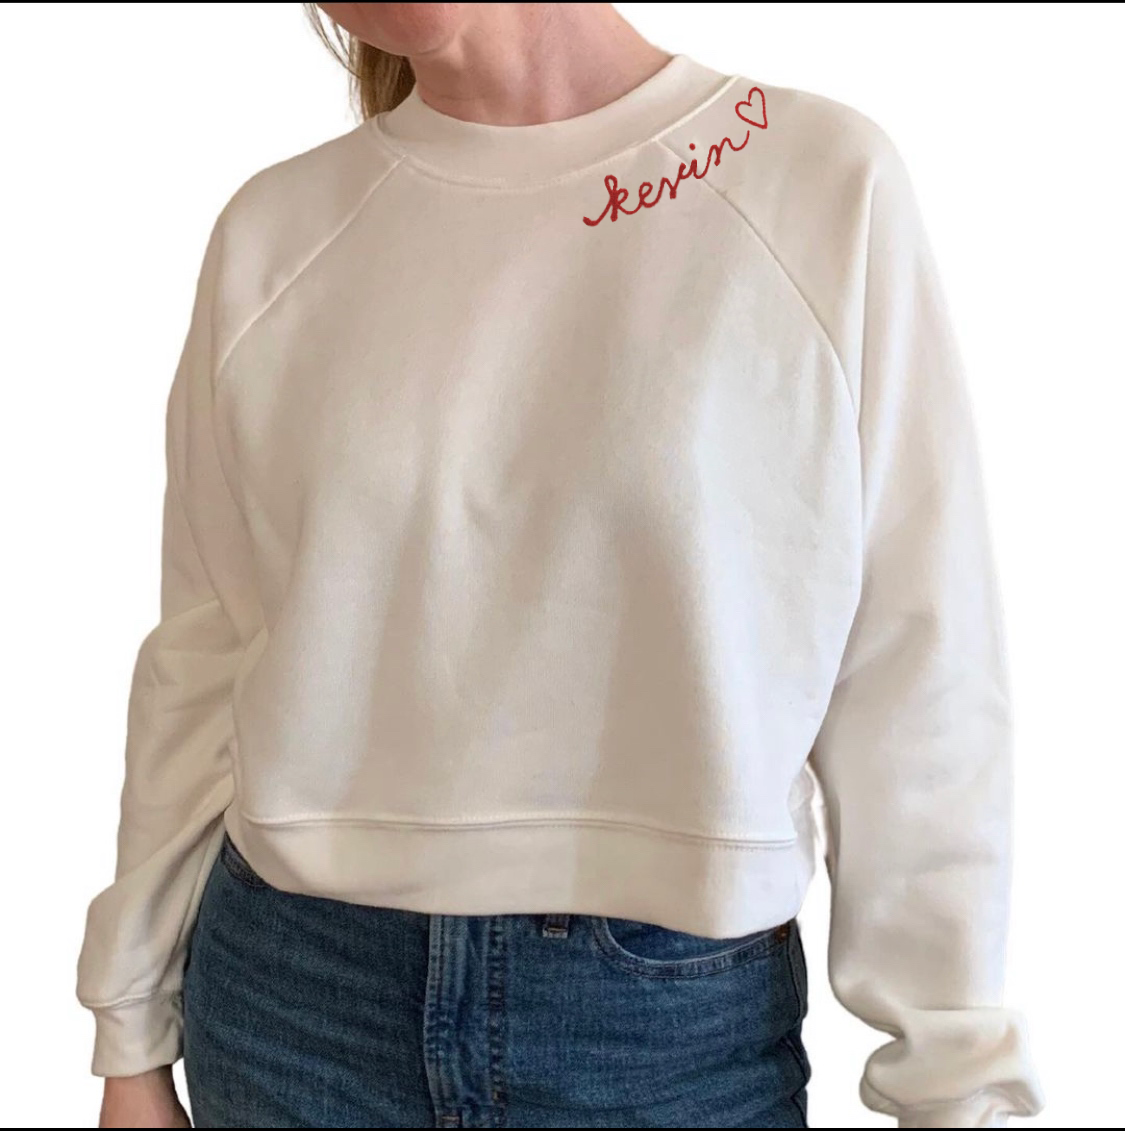 The Women's Cropped Chainstitch Sweatshirt - Cream